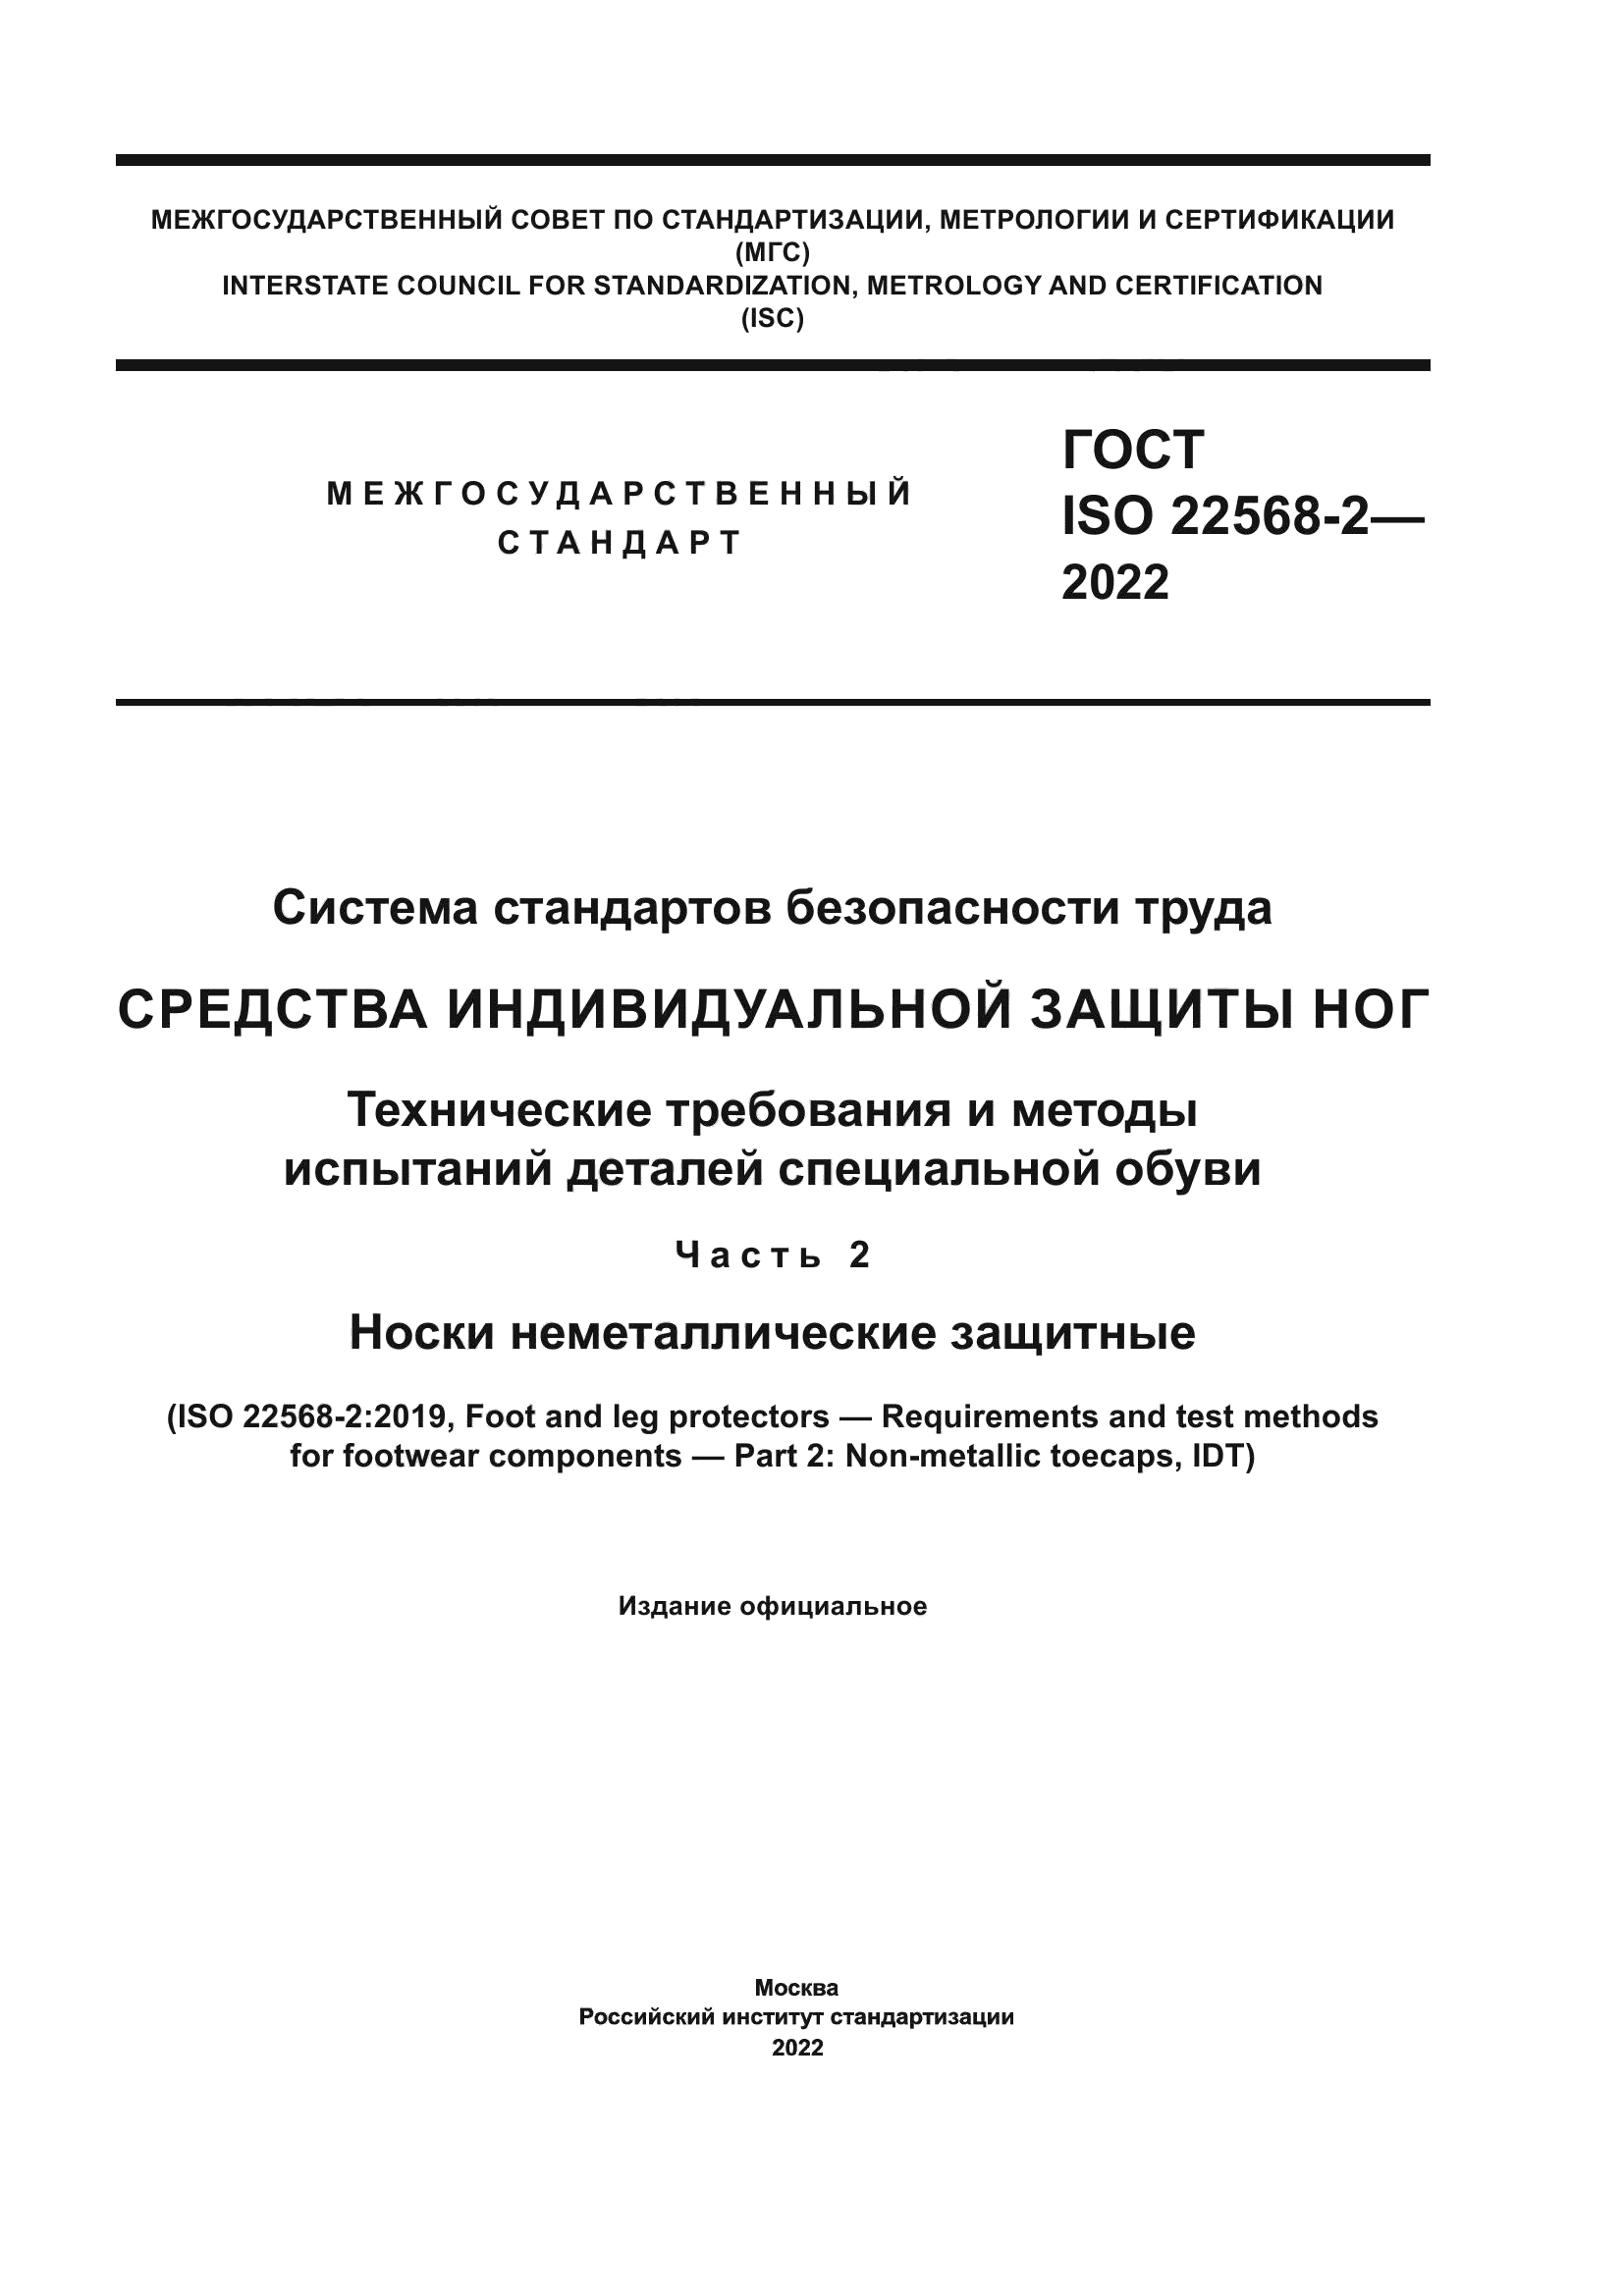 ГОСТ ISO 22568-2-2022